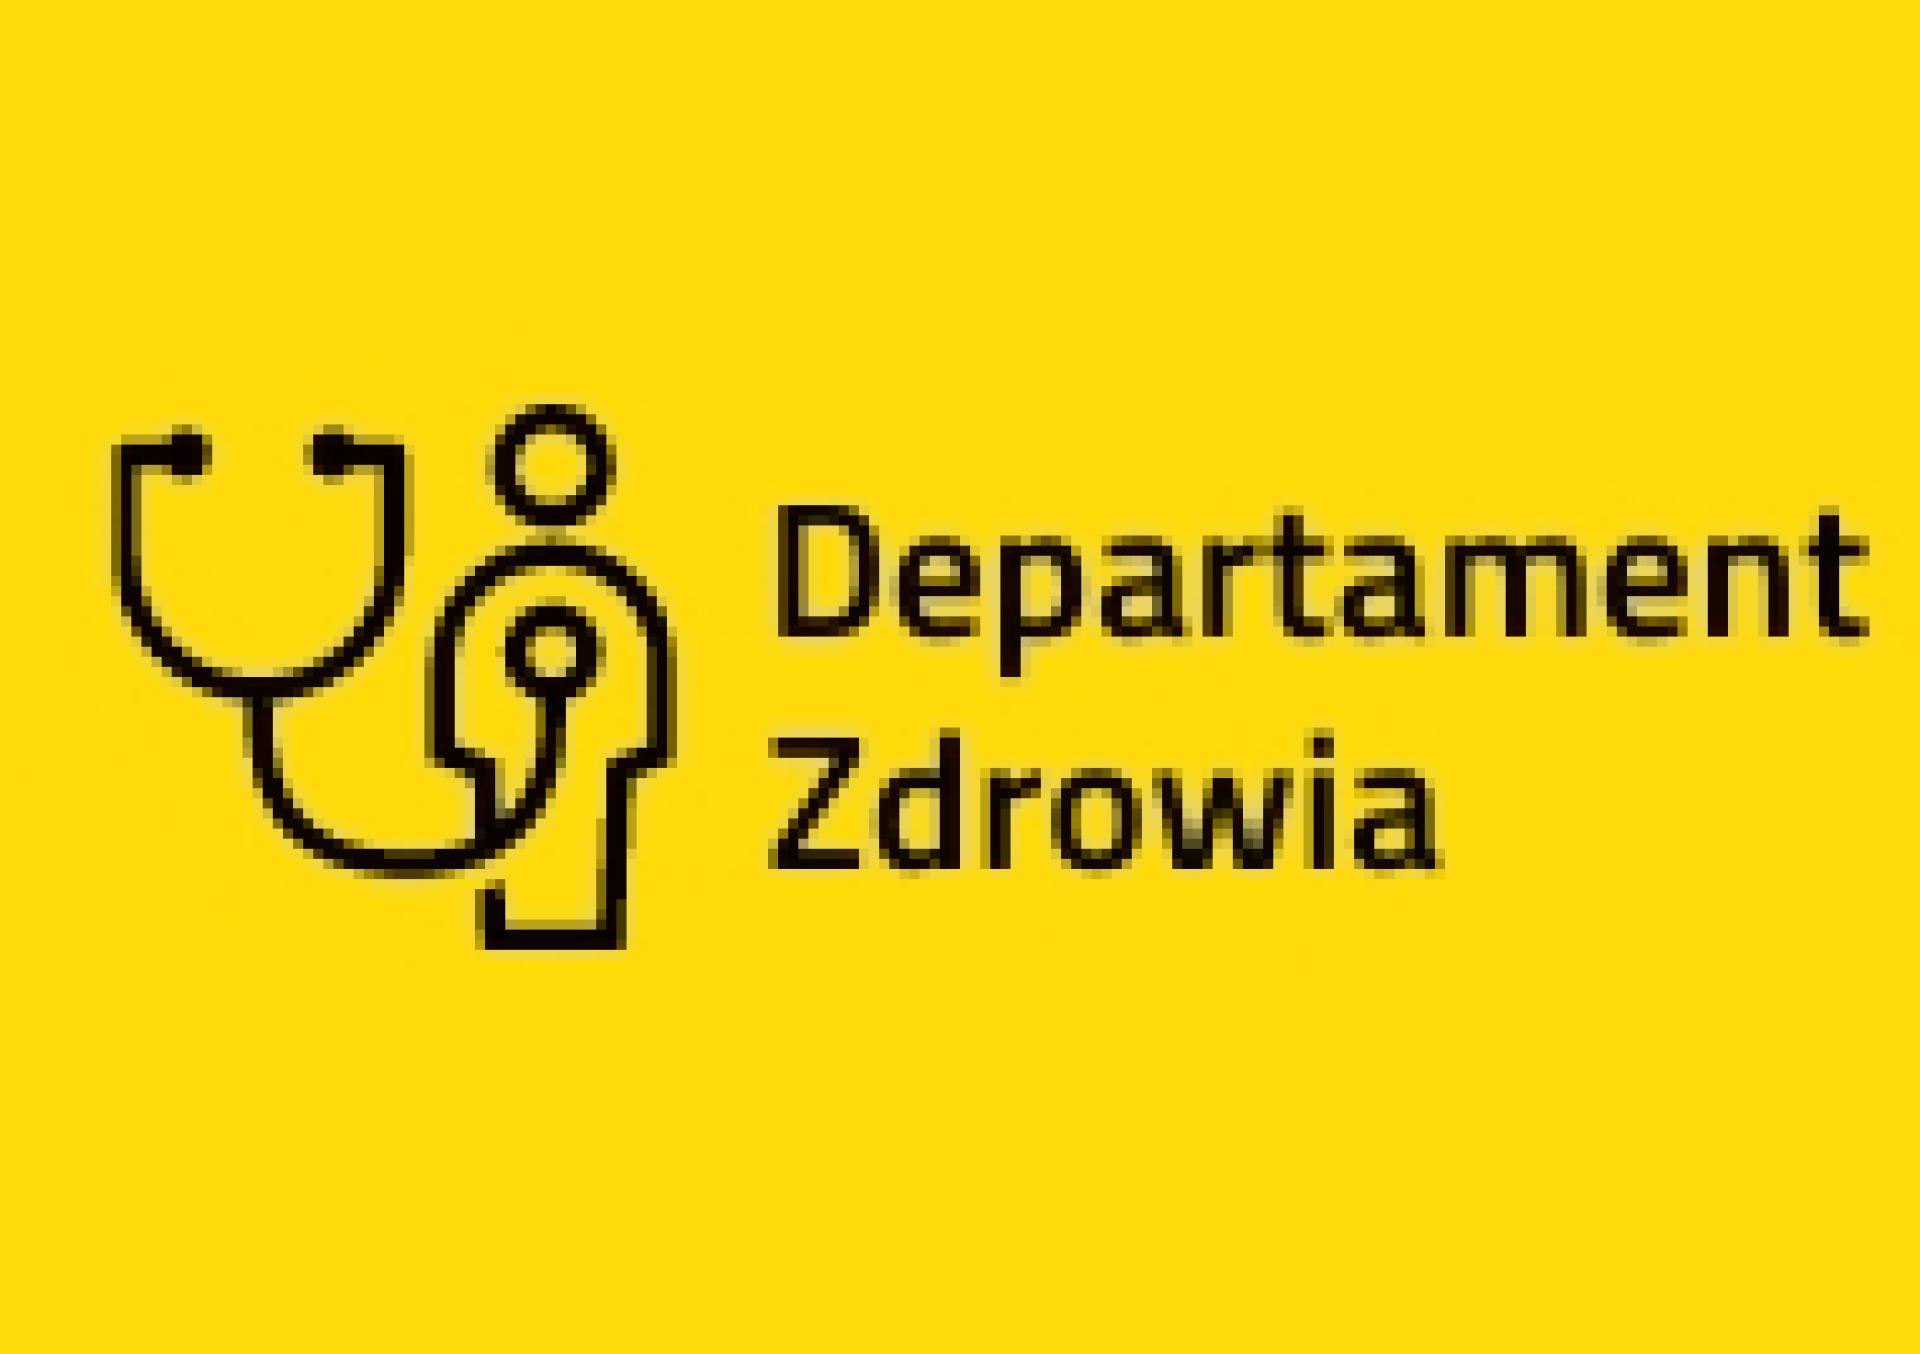 Konsultacje projektu uchwały Sejmiku Województwa Wielkopolskiego zmieniającej uchwałę w sprawie nadania statutu Wojewódzkiego Szpitala Zespolonego w Kaliszu - zobacz więcej